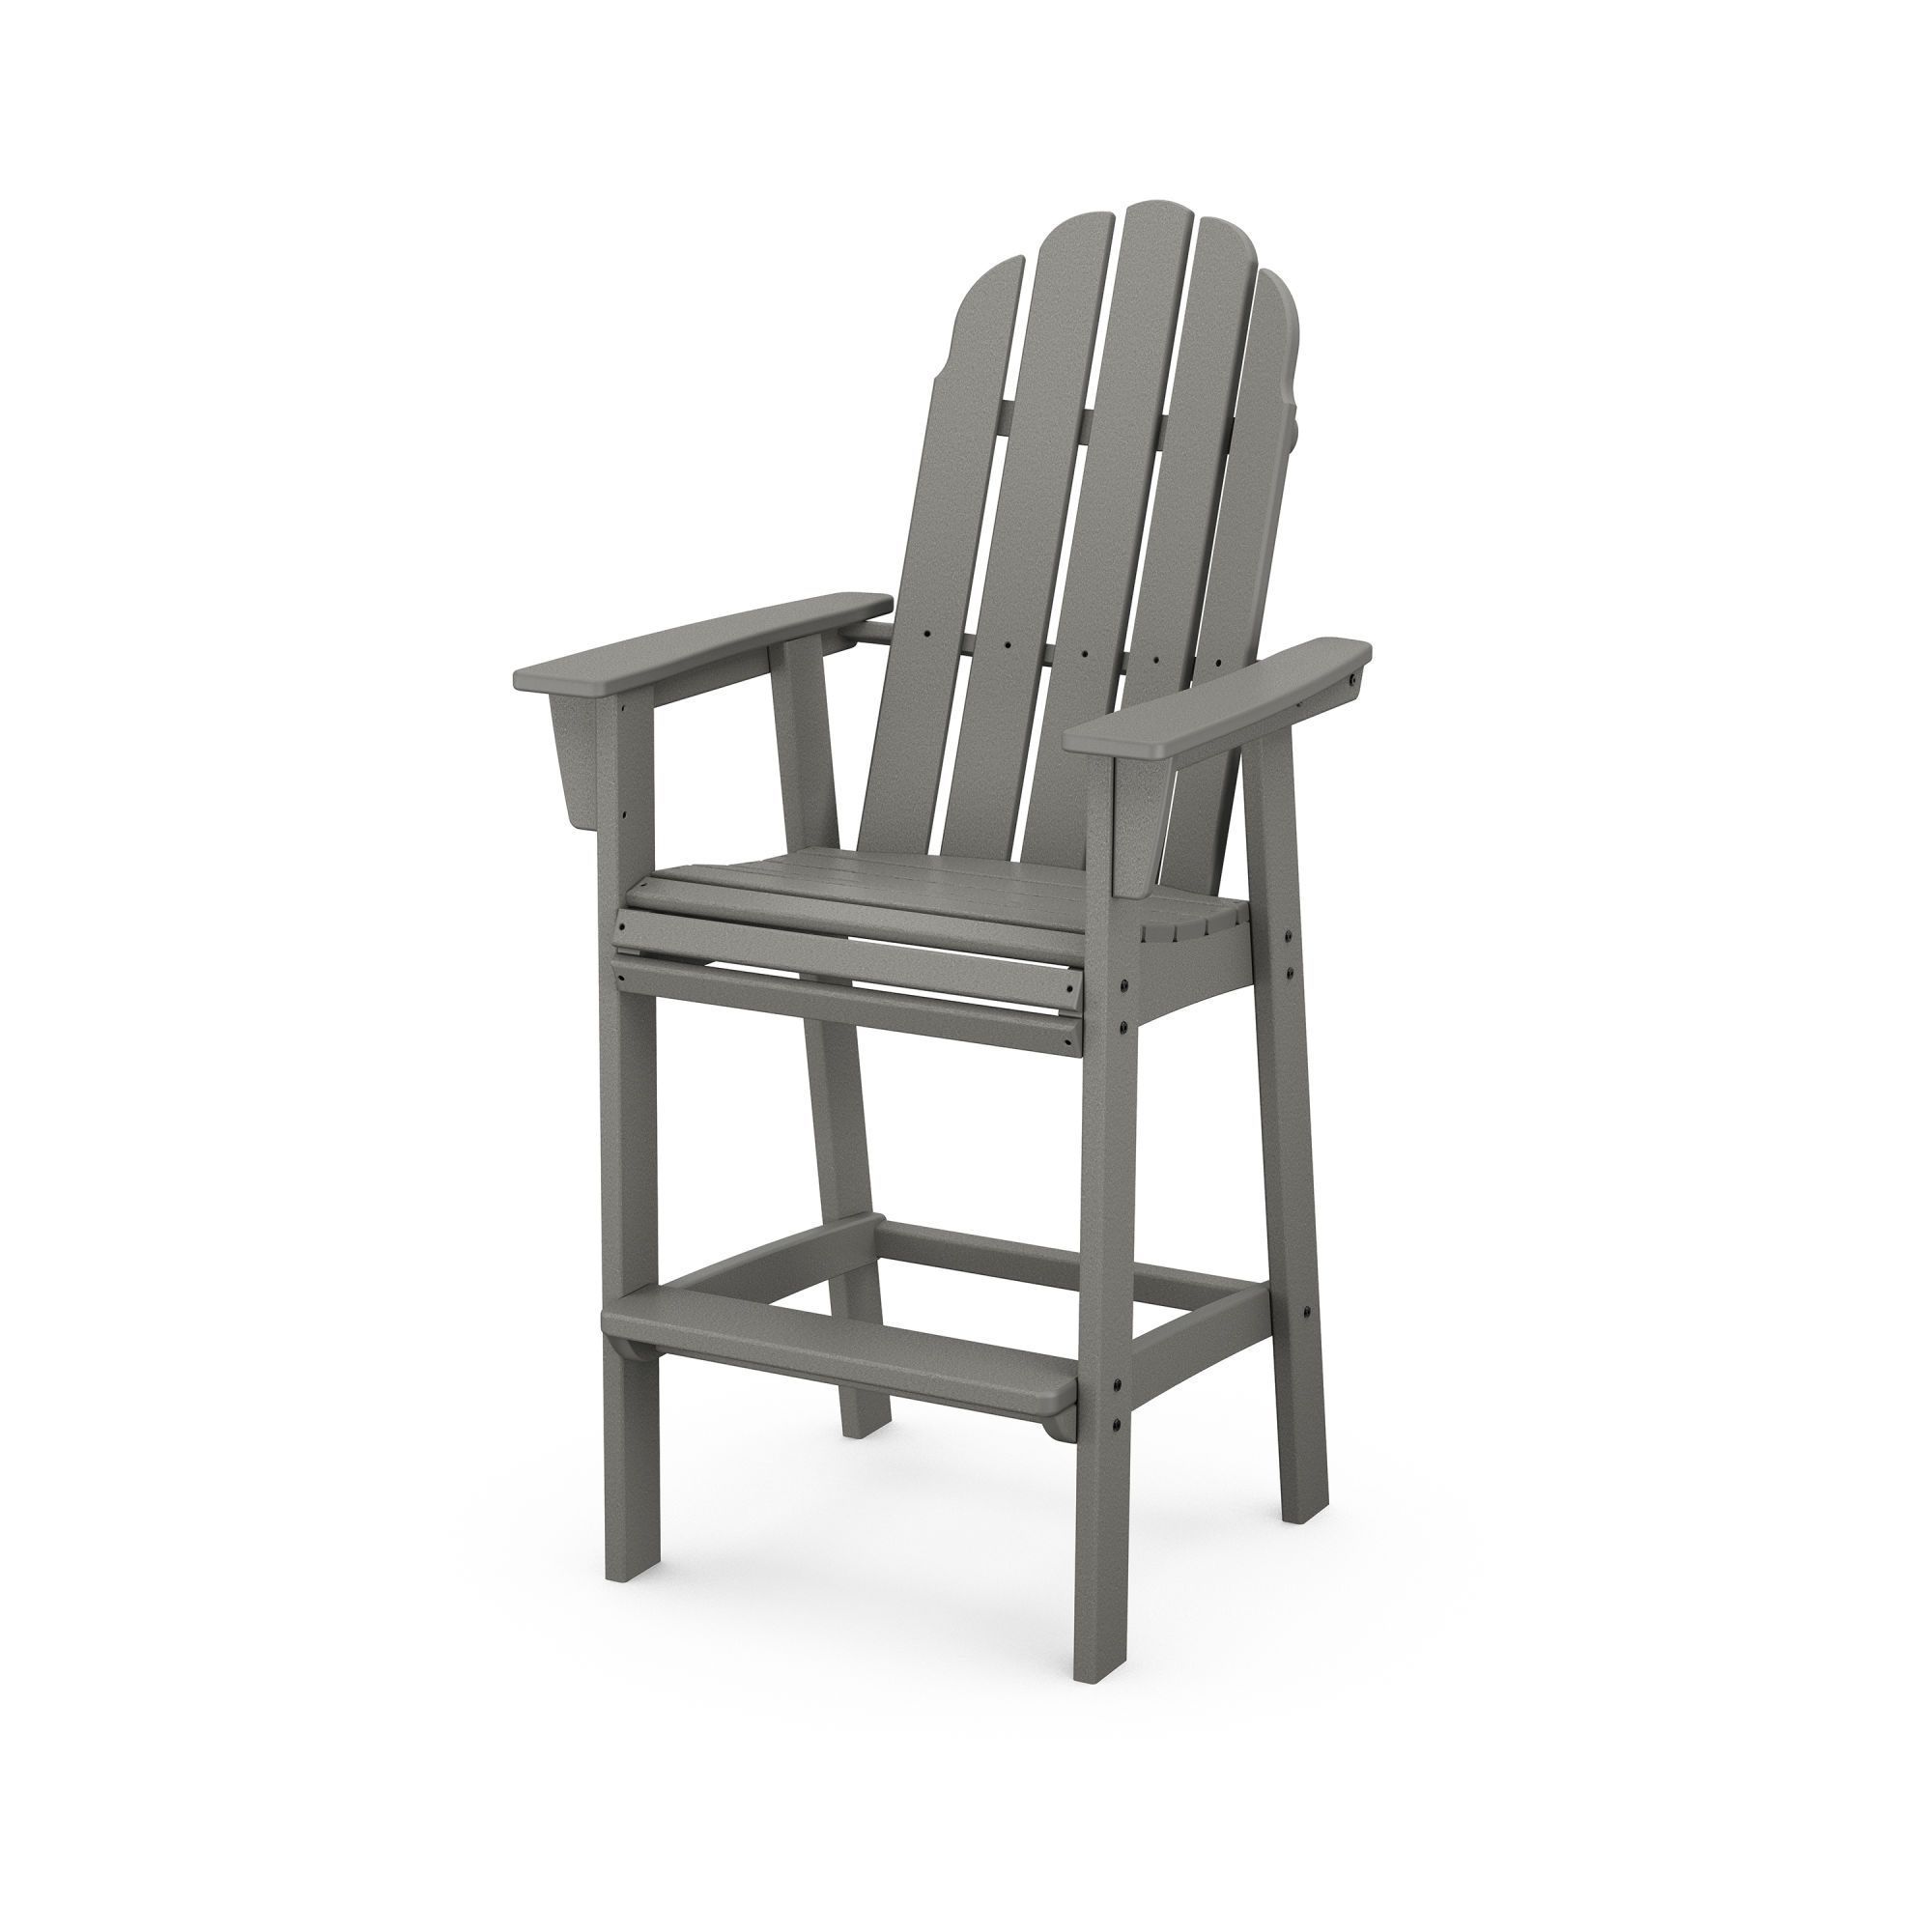 POLYWOOD® Vineyard Curveback Adirondack Bar Chair - ADD602 | POLYWOOD